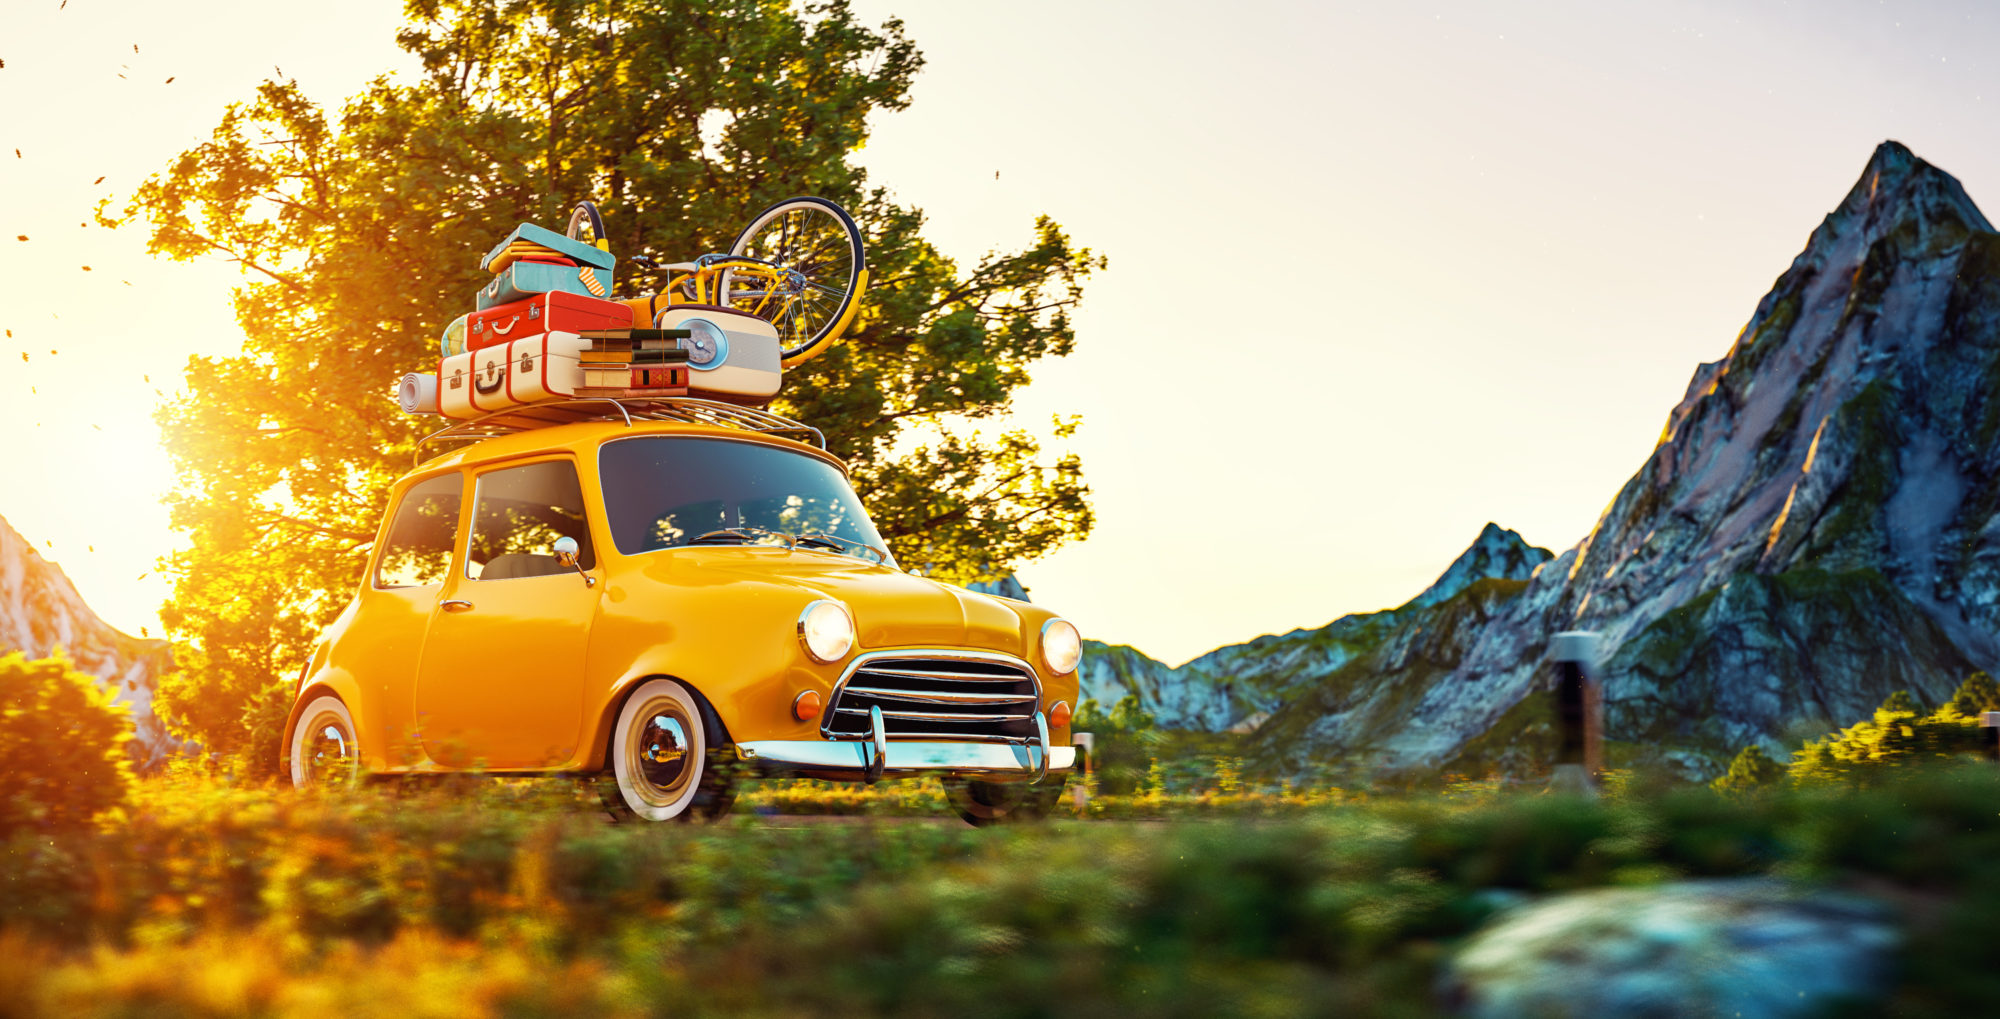 petite voiture jaune avec bagage empilés sur le toit pour départ en vacances bon plan